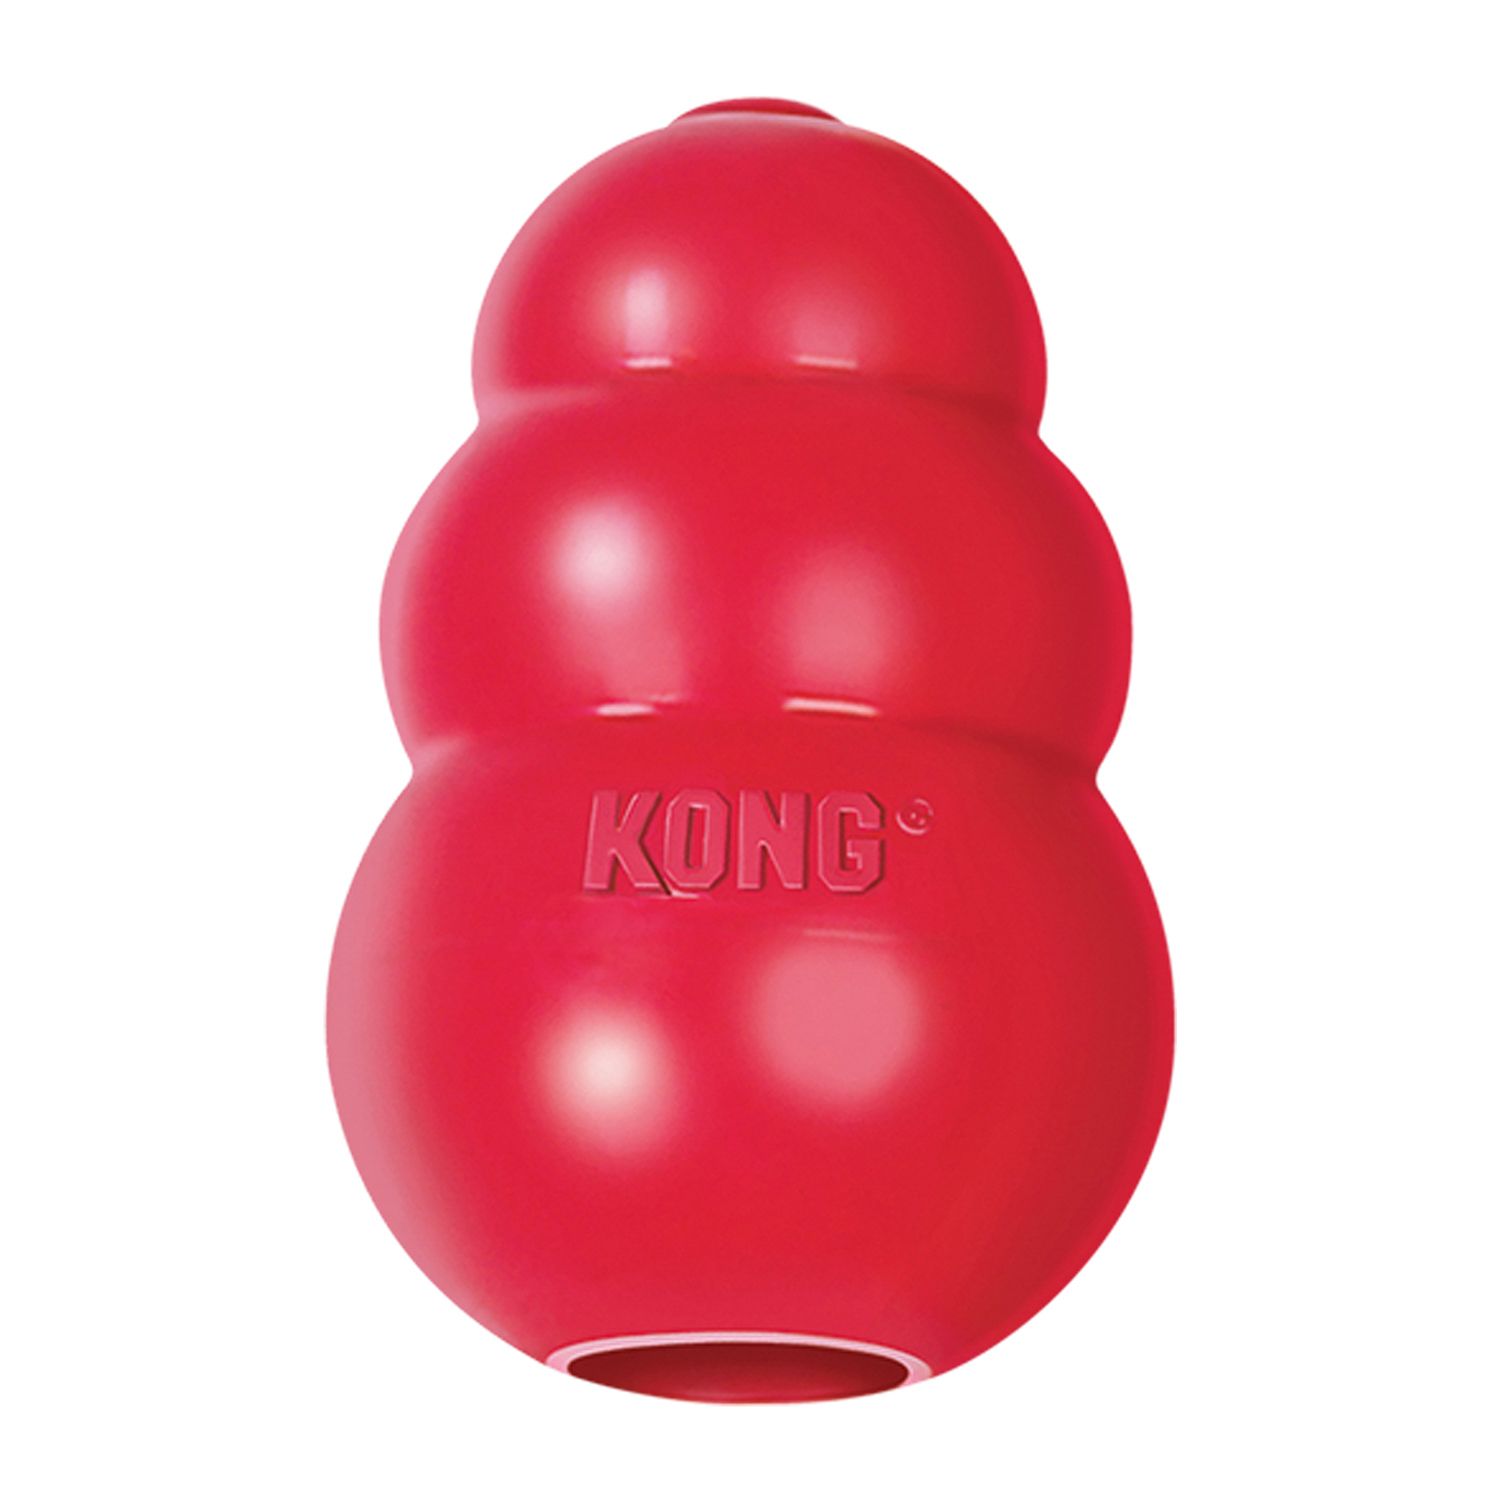 Kong Classic игрушка для собак большая 10 х 6 см